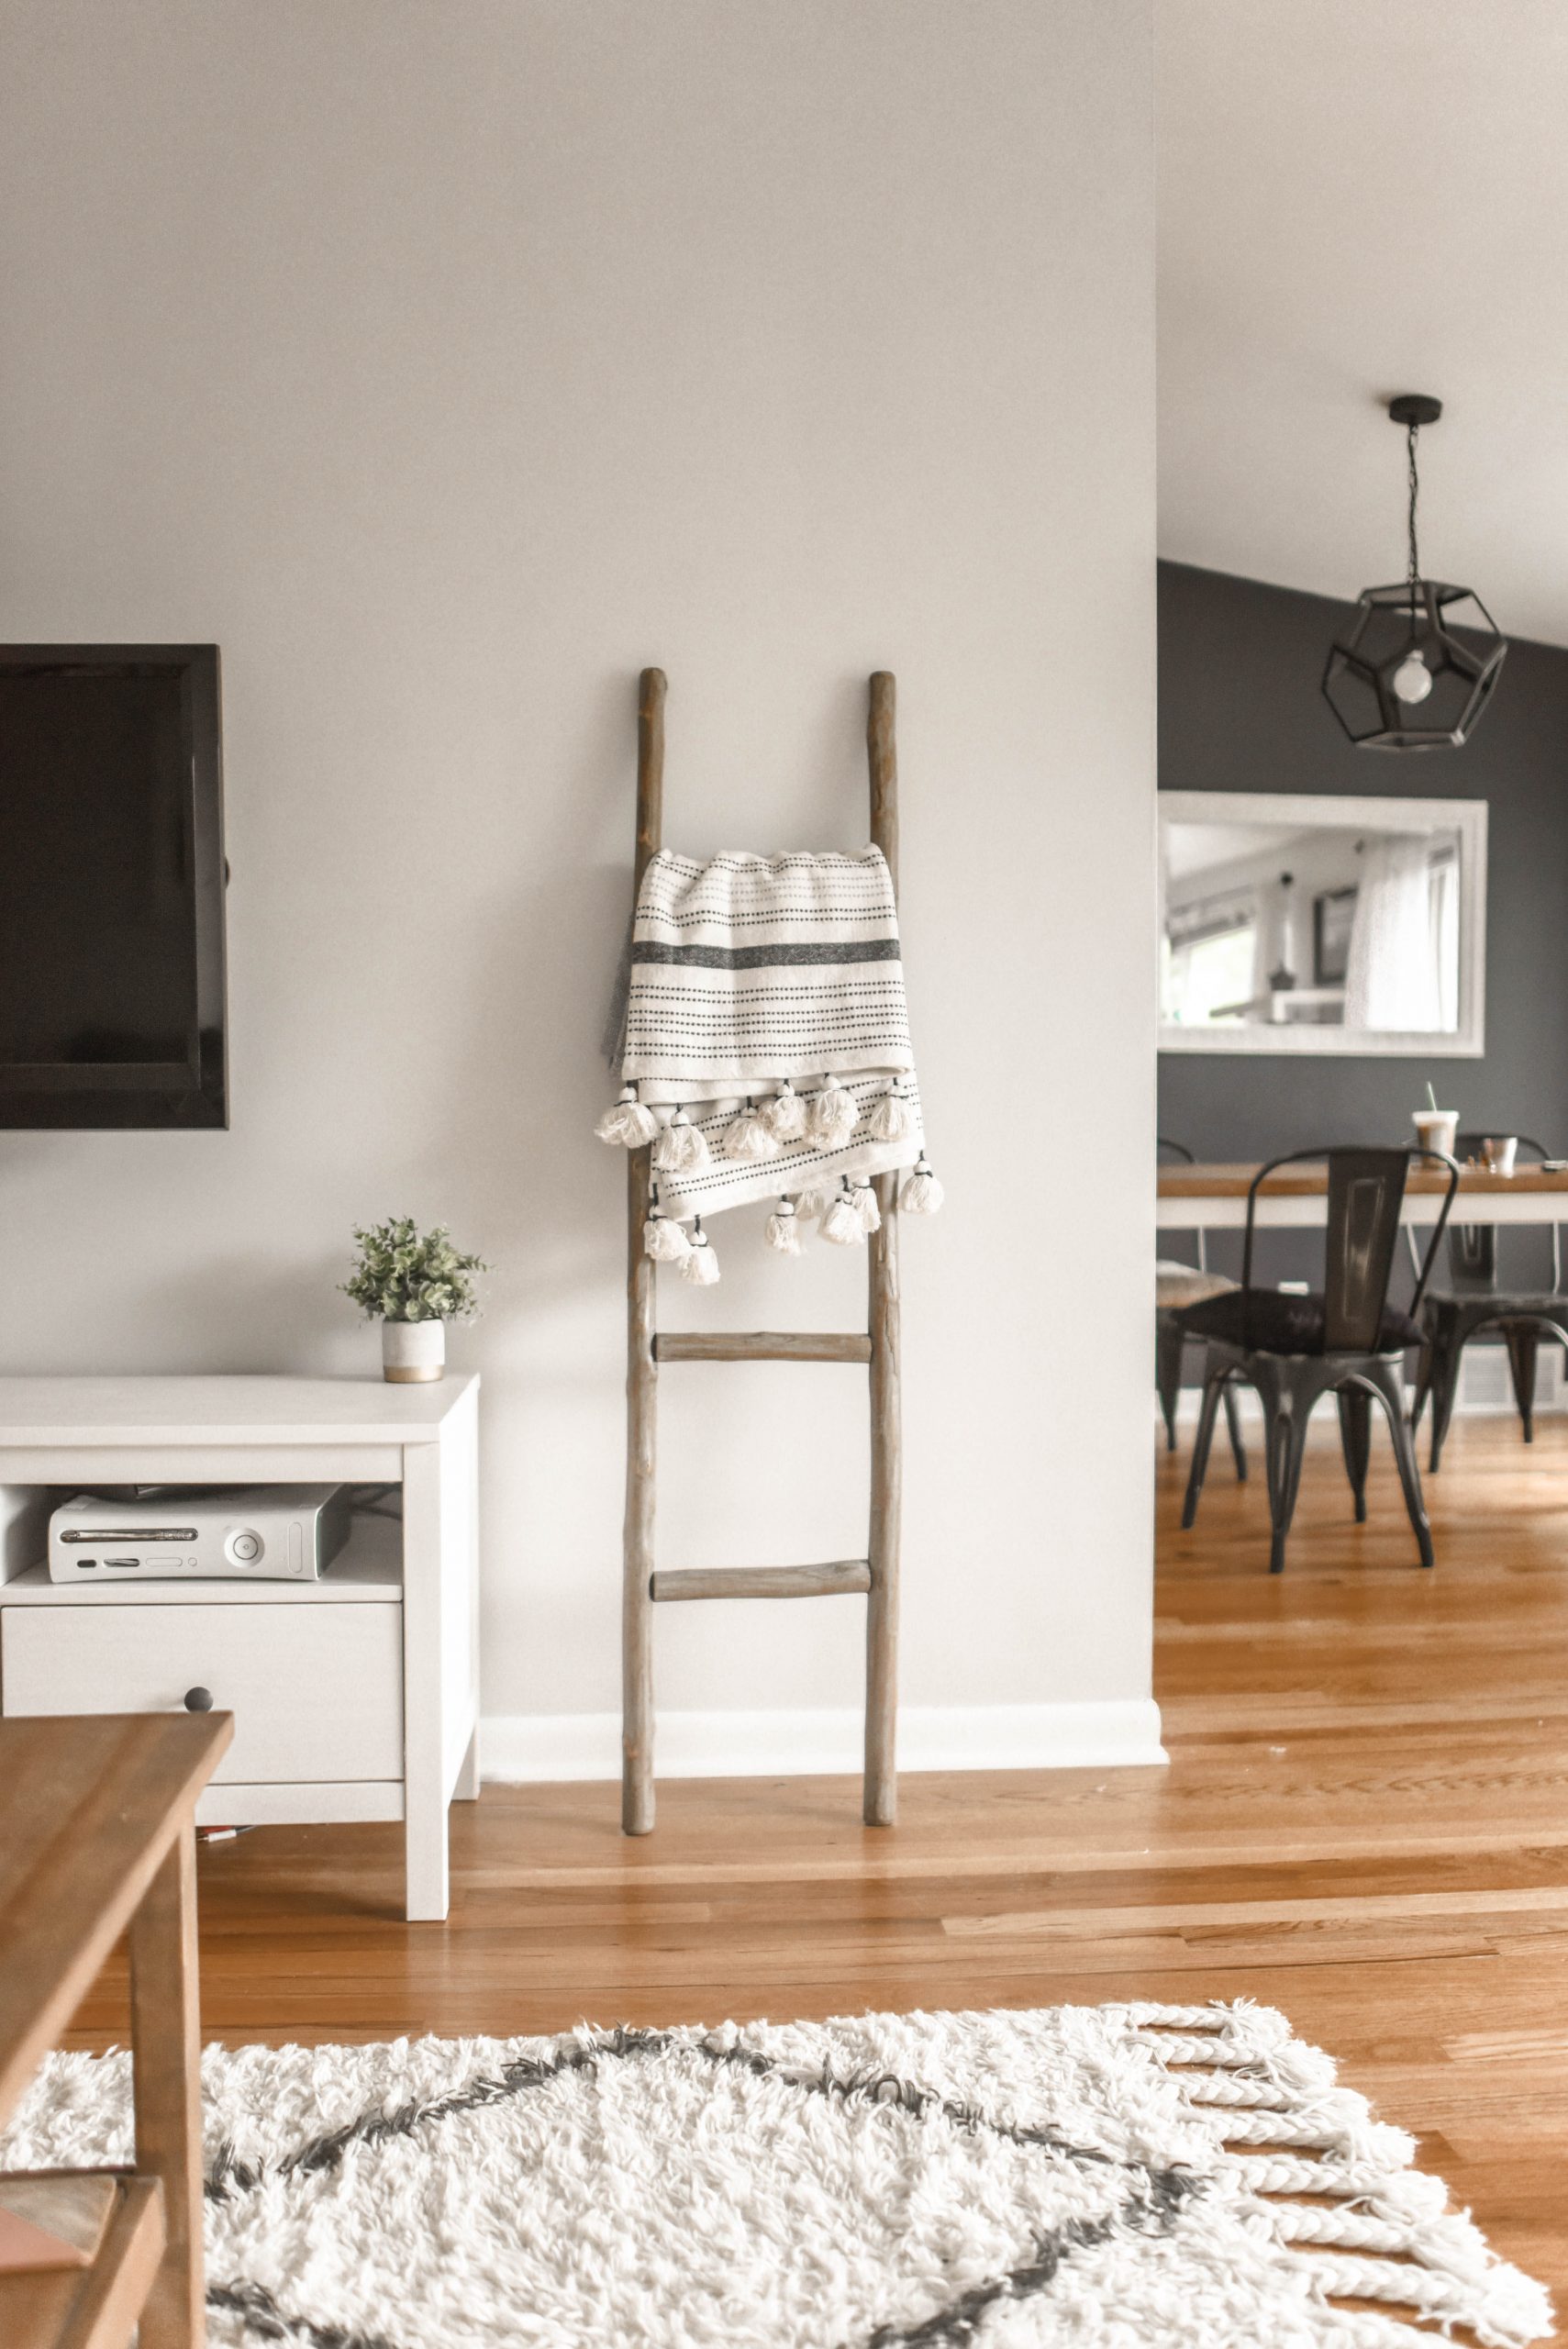 Moderná obývačka v škandinávskom štýle s dreveným rebríkom a dekou